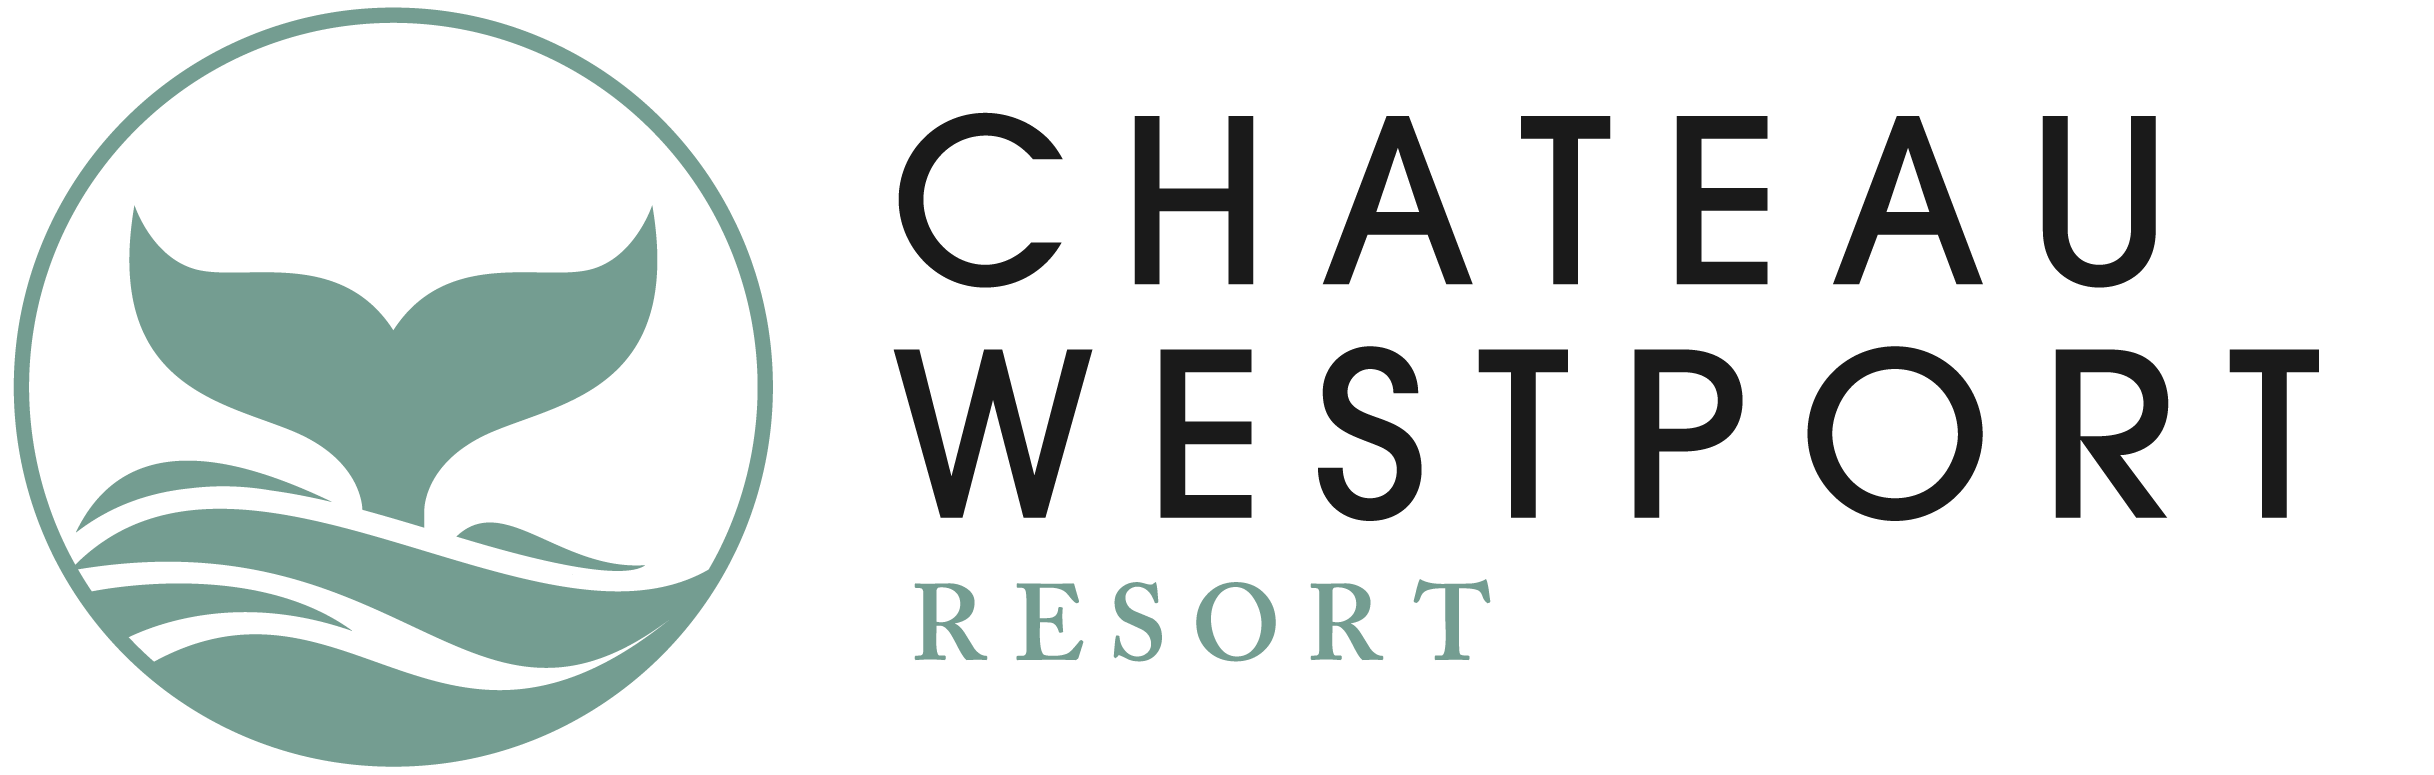 Chateau Westport Resort